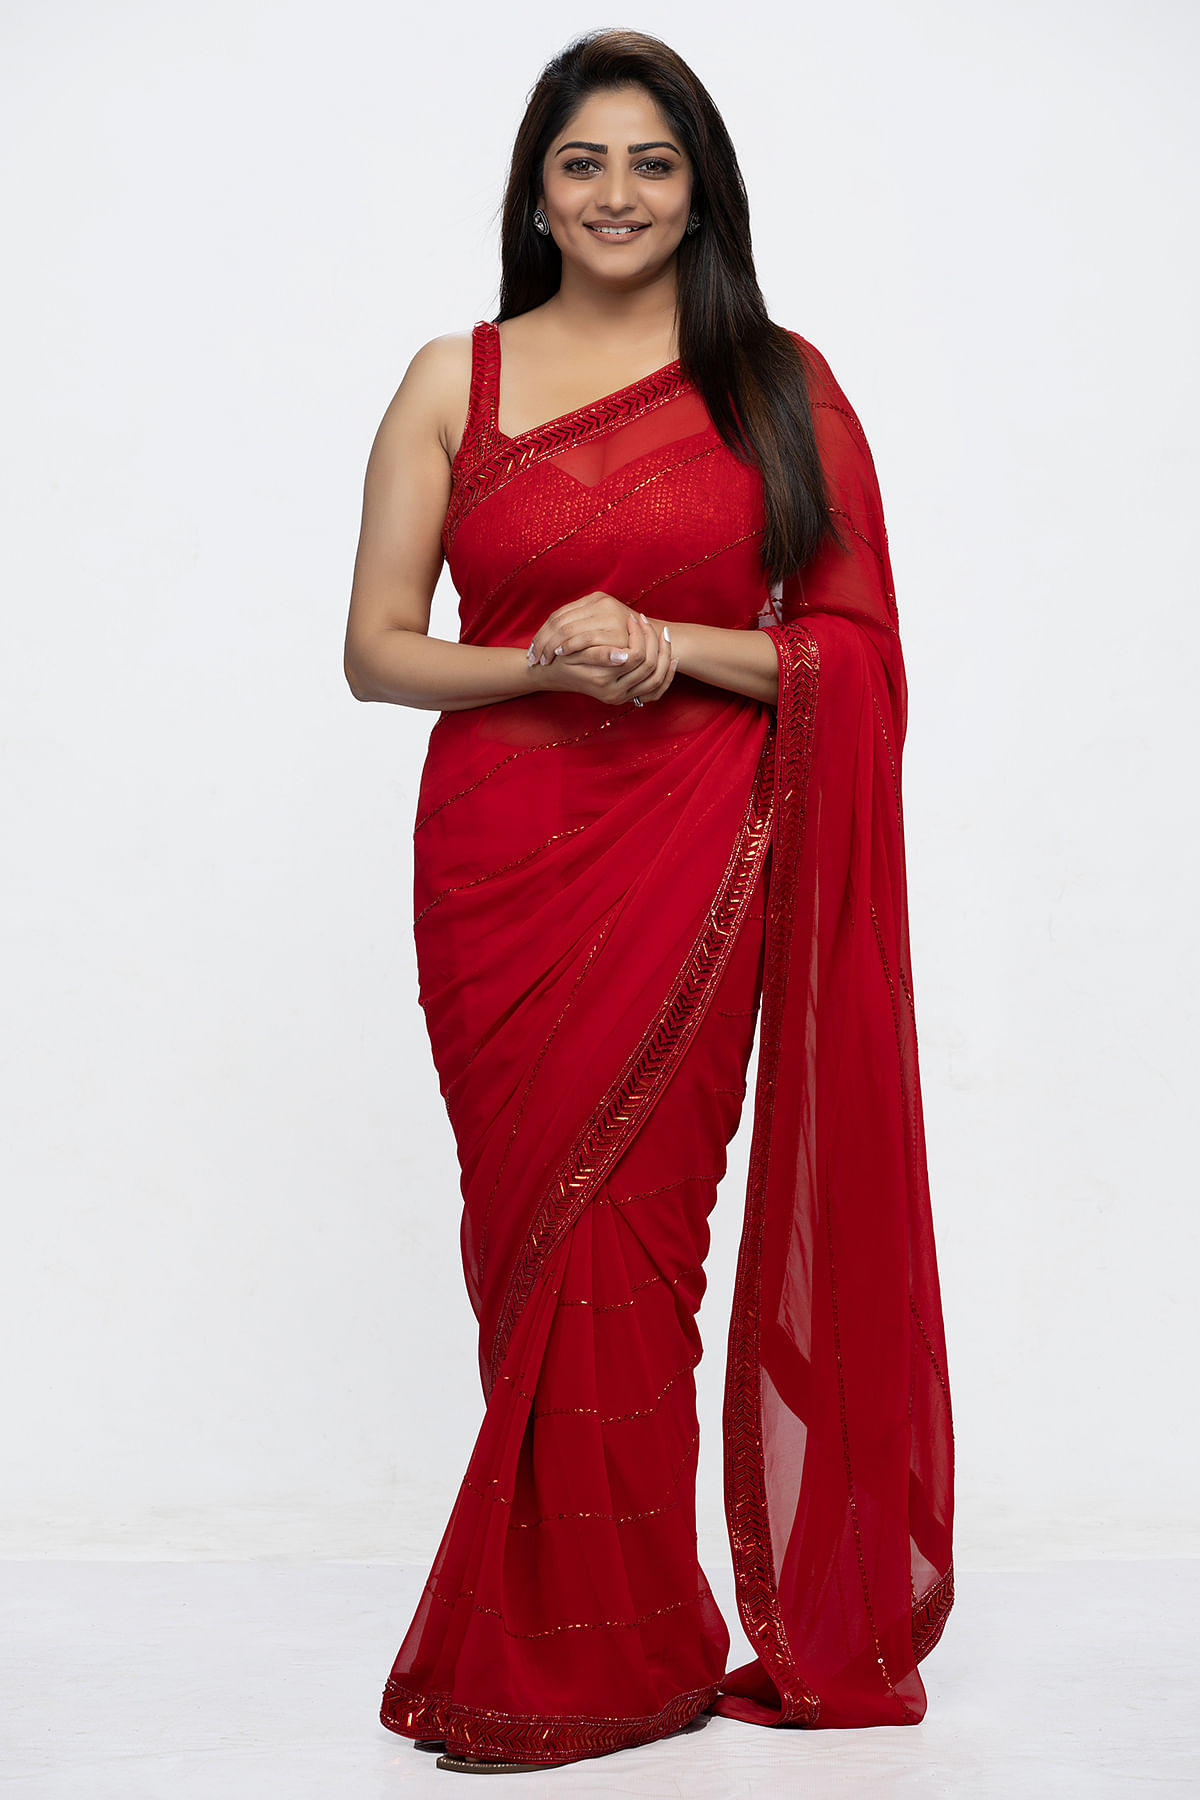 Rachita Ram Pron Sex - Buy Radiant Rachita Ram In Samyakk's Crimson Red Sequins Embroidered  Georgette Saree Online | Samyakk